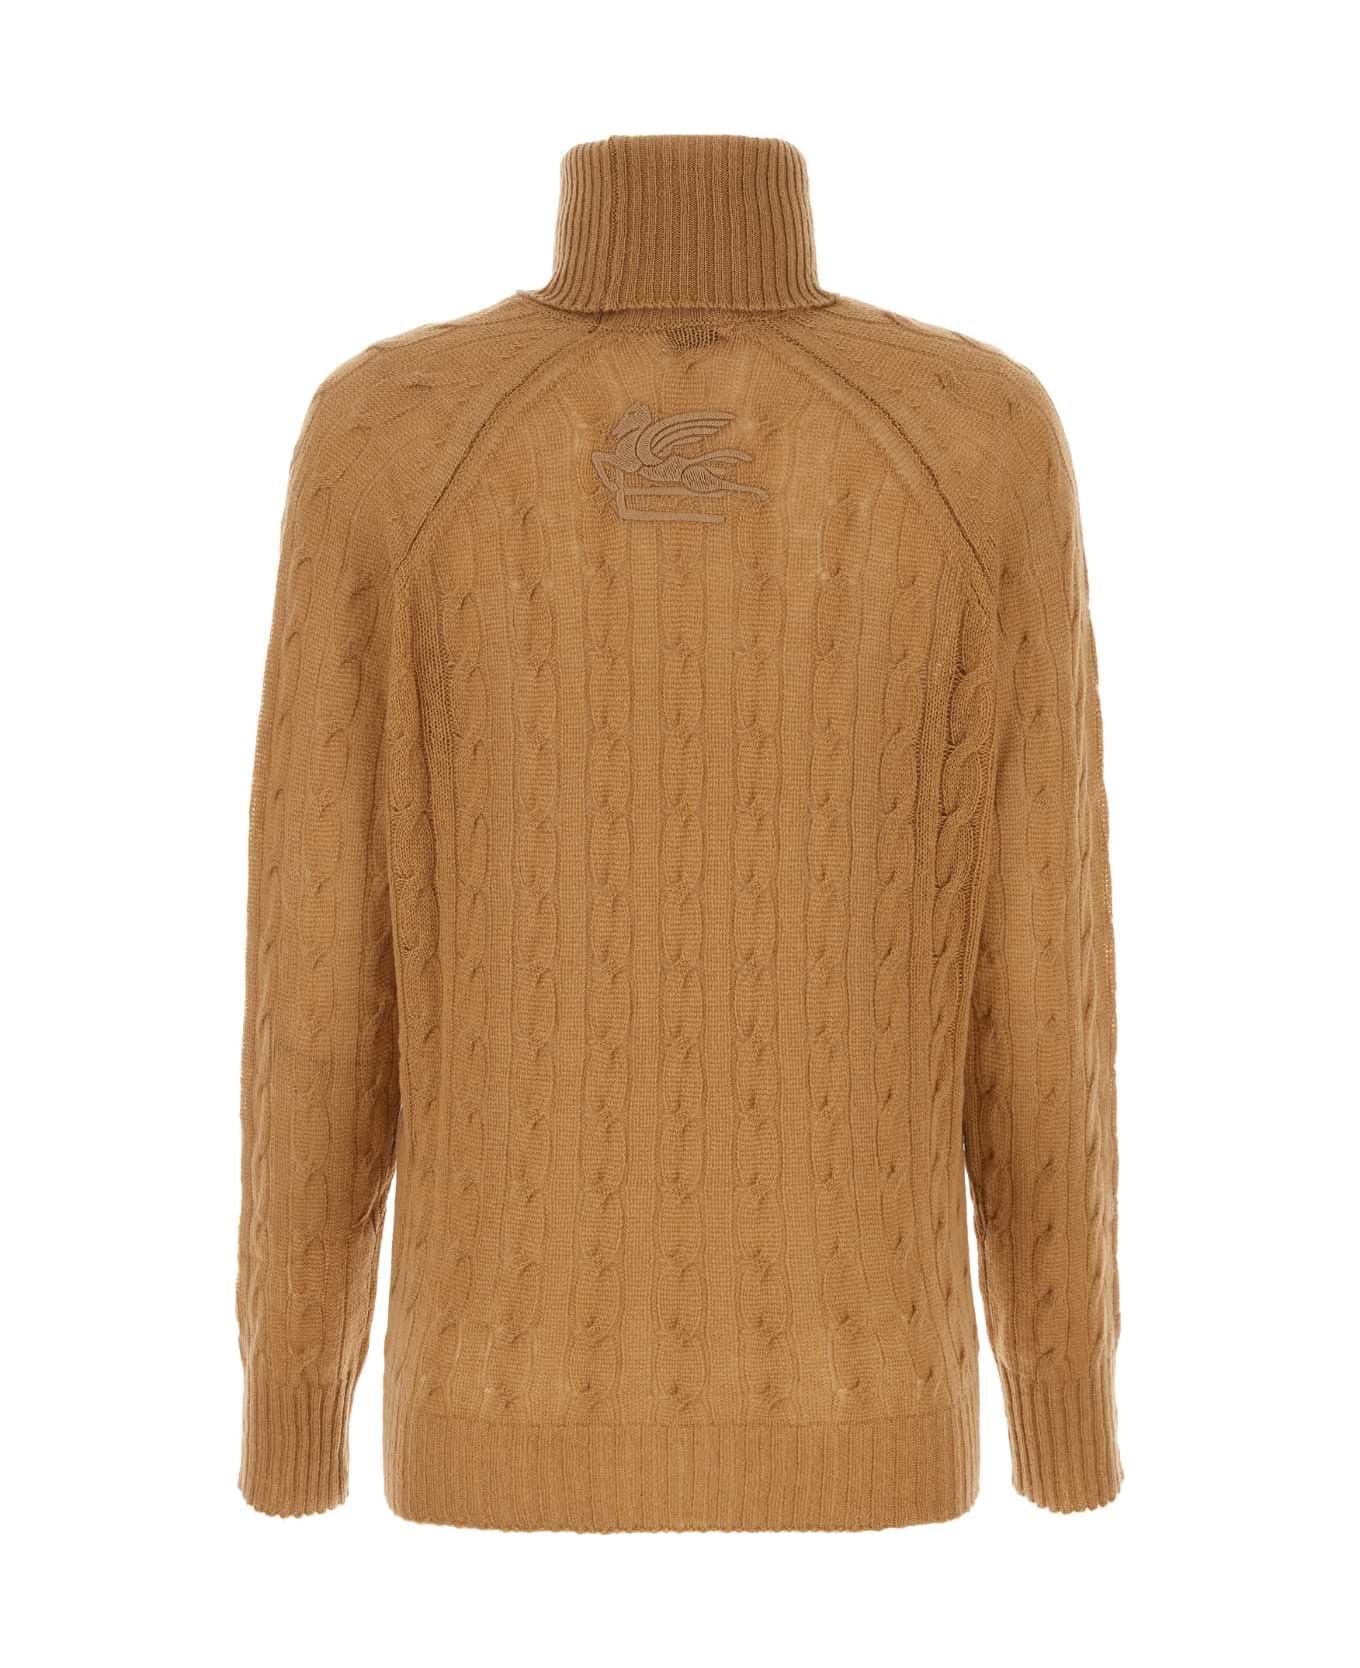 Etro Biscuit Cashmere Sweater - BEIGE ニットウェア